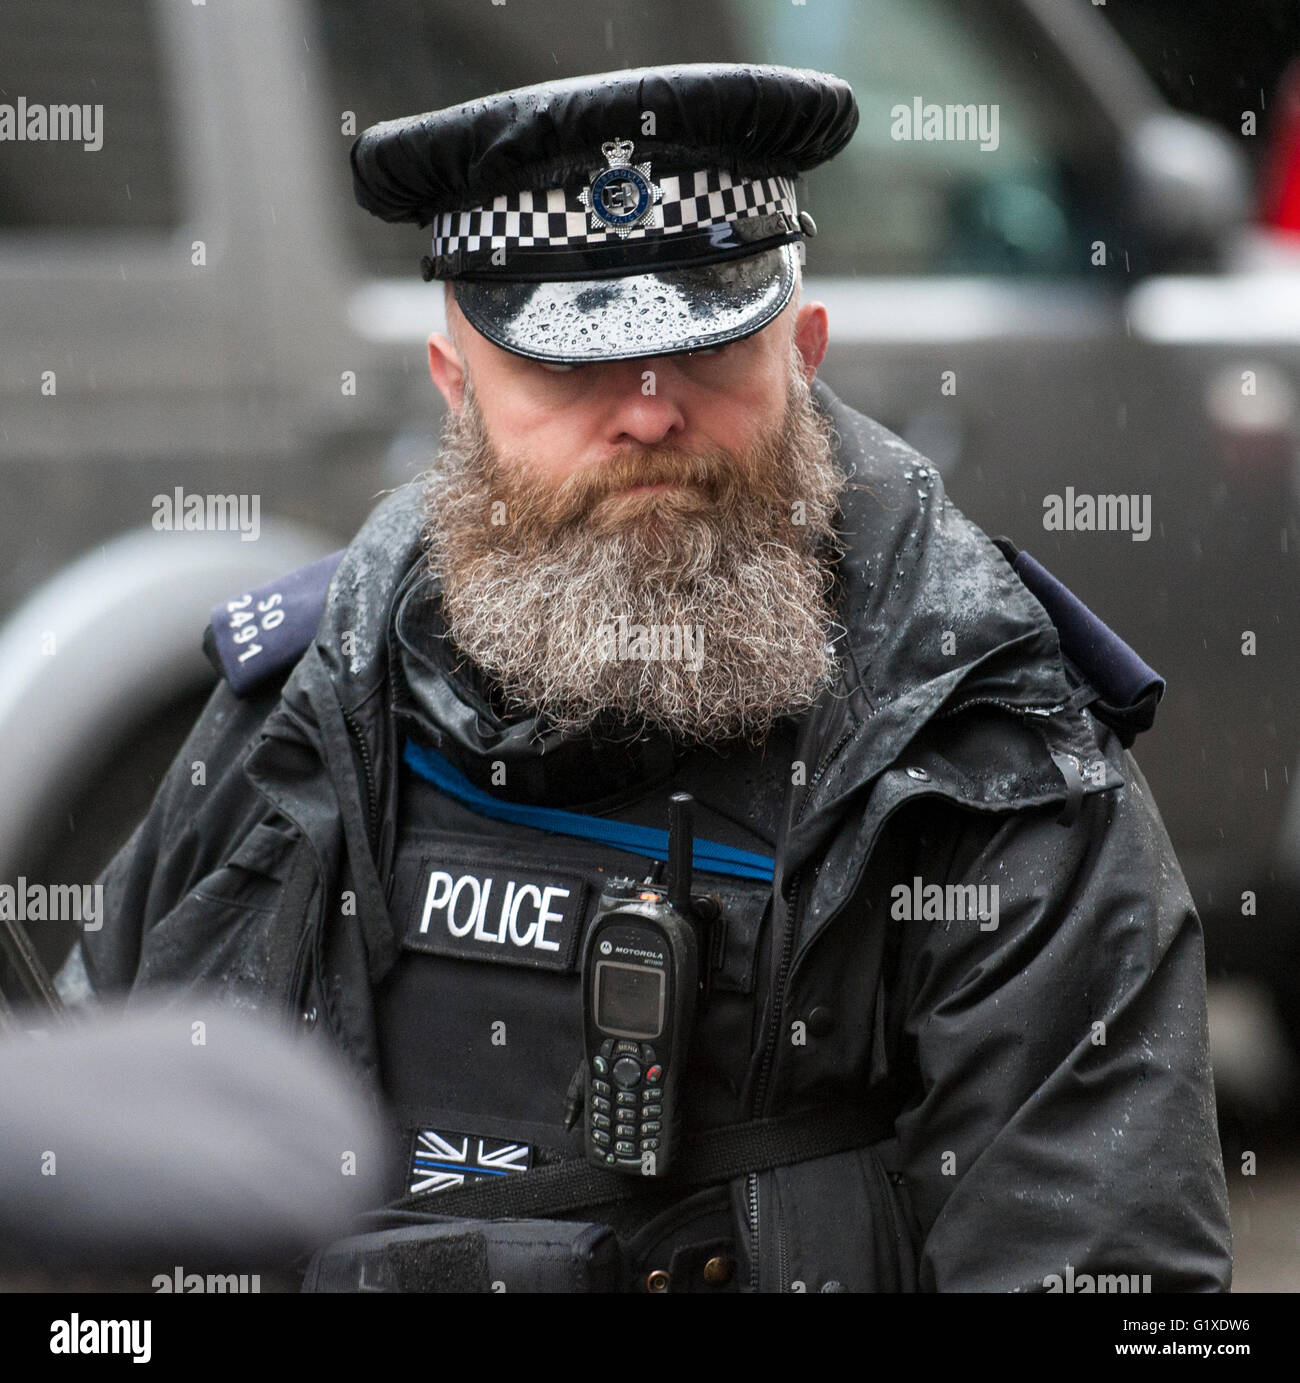 un-oficial-de-la-policia-britanica-armados-de-guardia-en-downing-street-con-una-barba-completa-g1xdw6.jpg